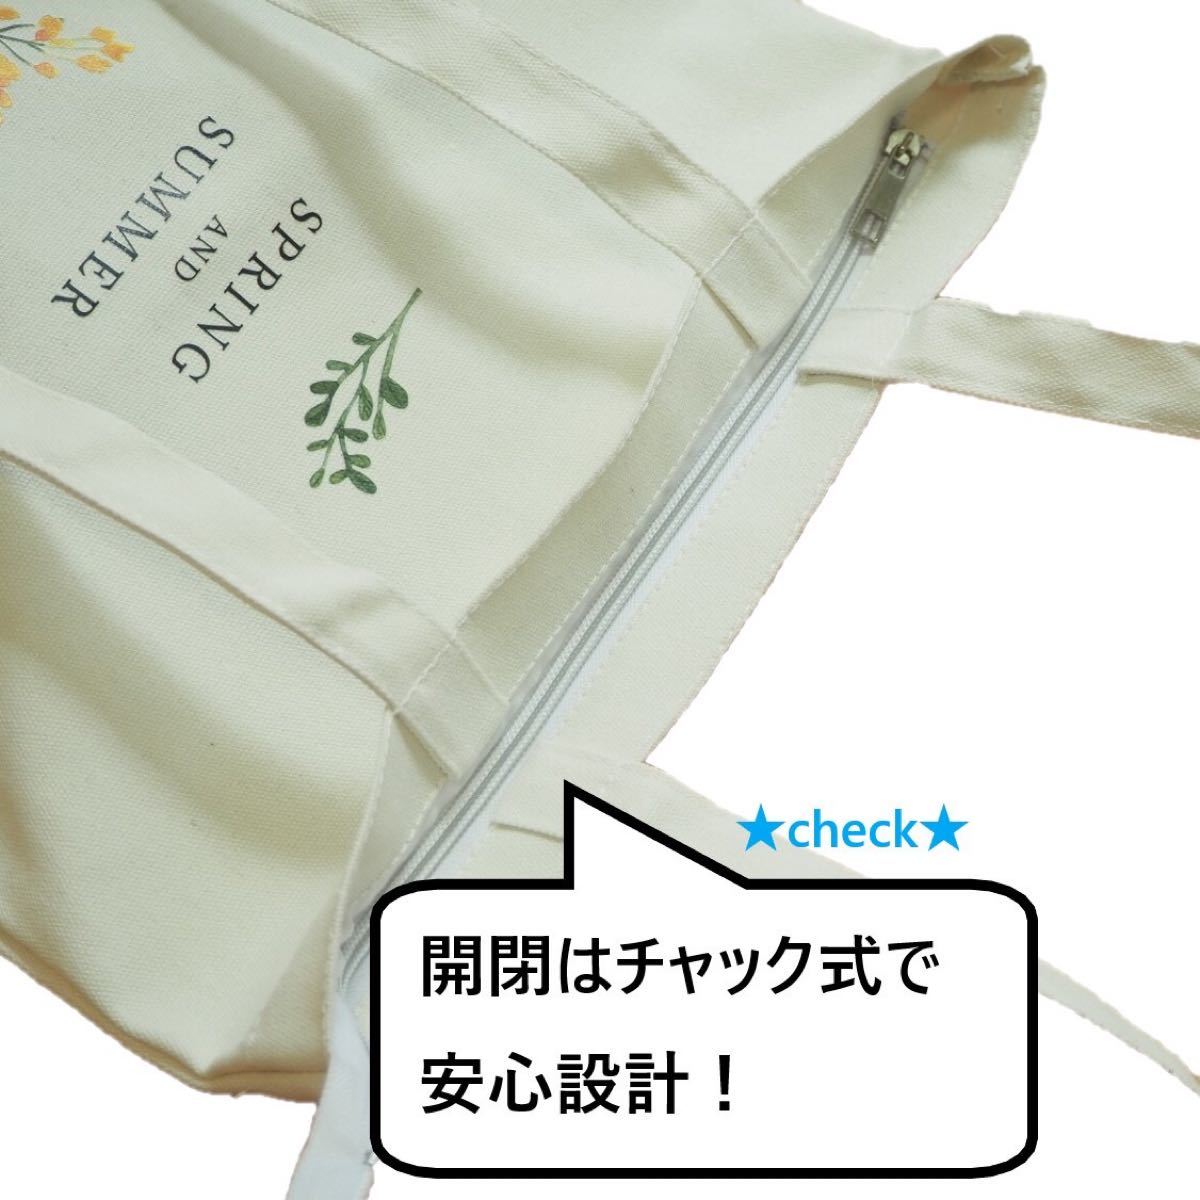 【新品】☆Flower Design Tote Bag☆ 花柄トートバッグ 帆布 チャック付き エコバック マザーズバッグ